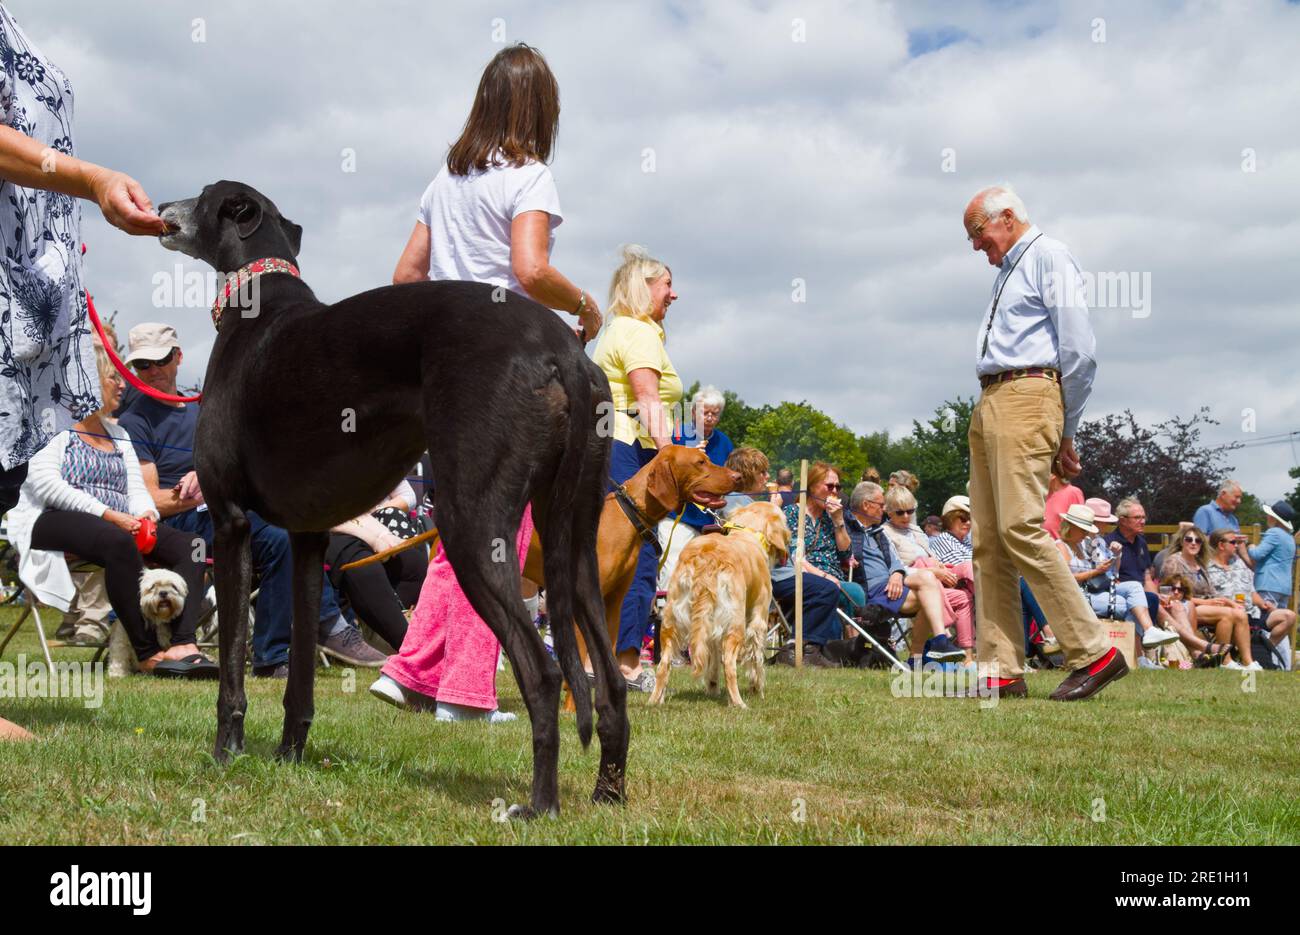 Un juge masculin parlant à un propriétaire lors d'Une exposition canine à Une foire de fête de village, Angleterre Royaume-Uni Banque D'Images